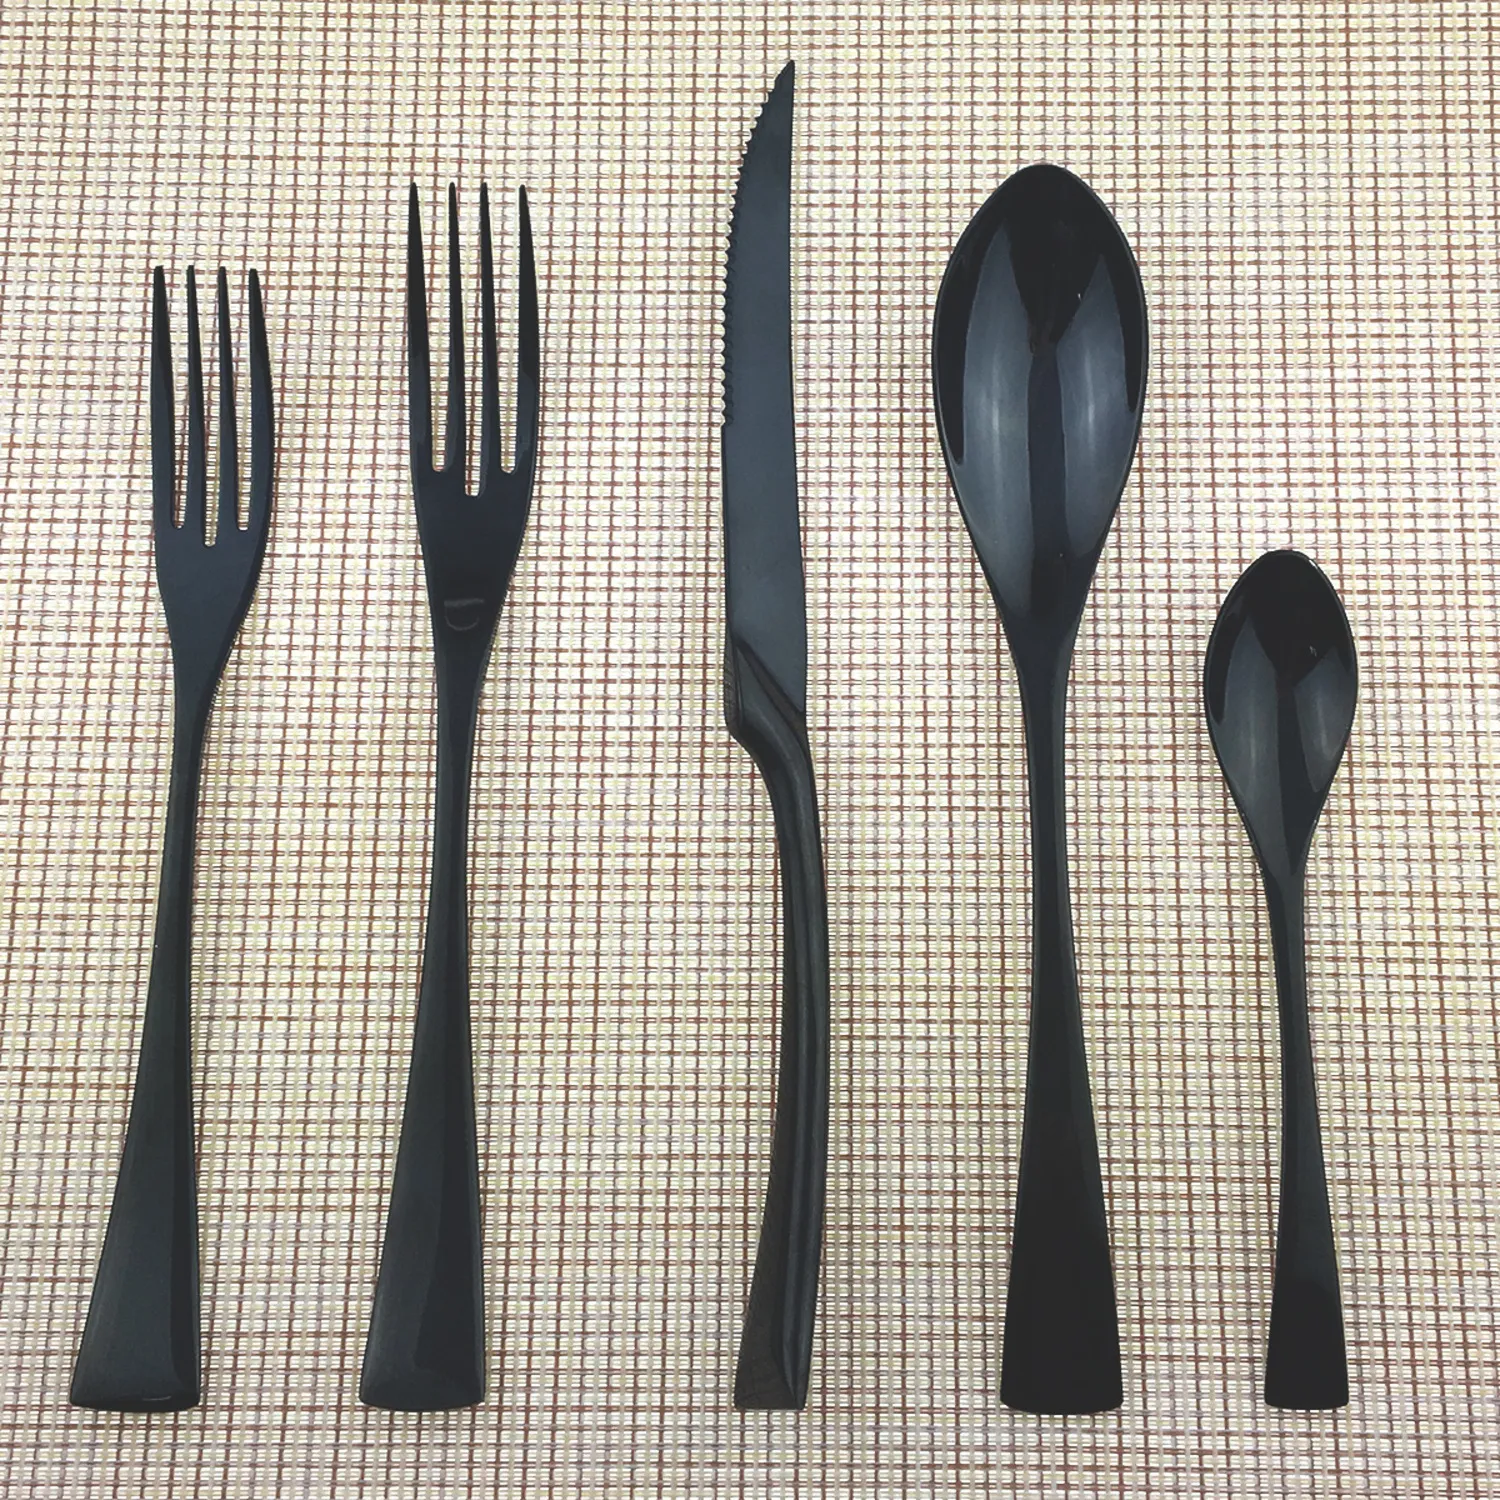 JASHII 5 pièces assiette en acier inoxydable noir vaisselle argenterie dîner couteaux à Steak fourchettes à Dessert cuillère à café vaisselle ensemble de couverts T203588925